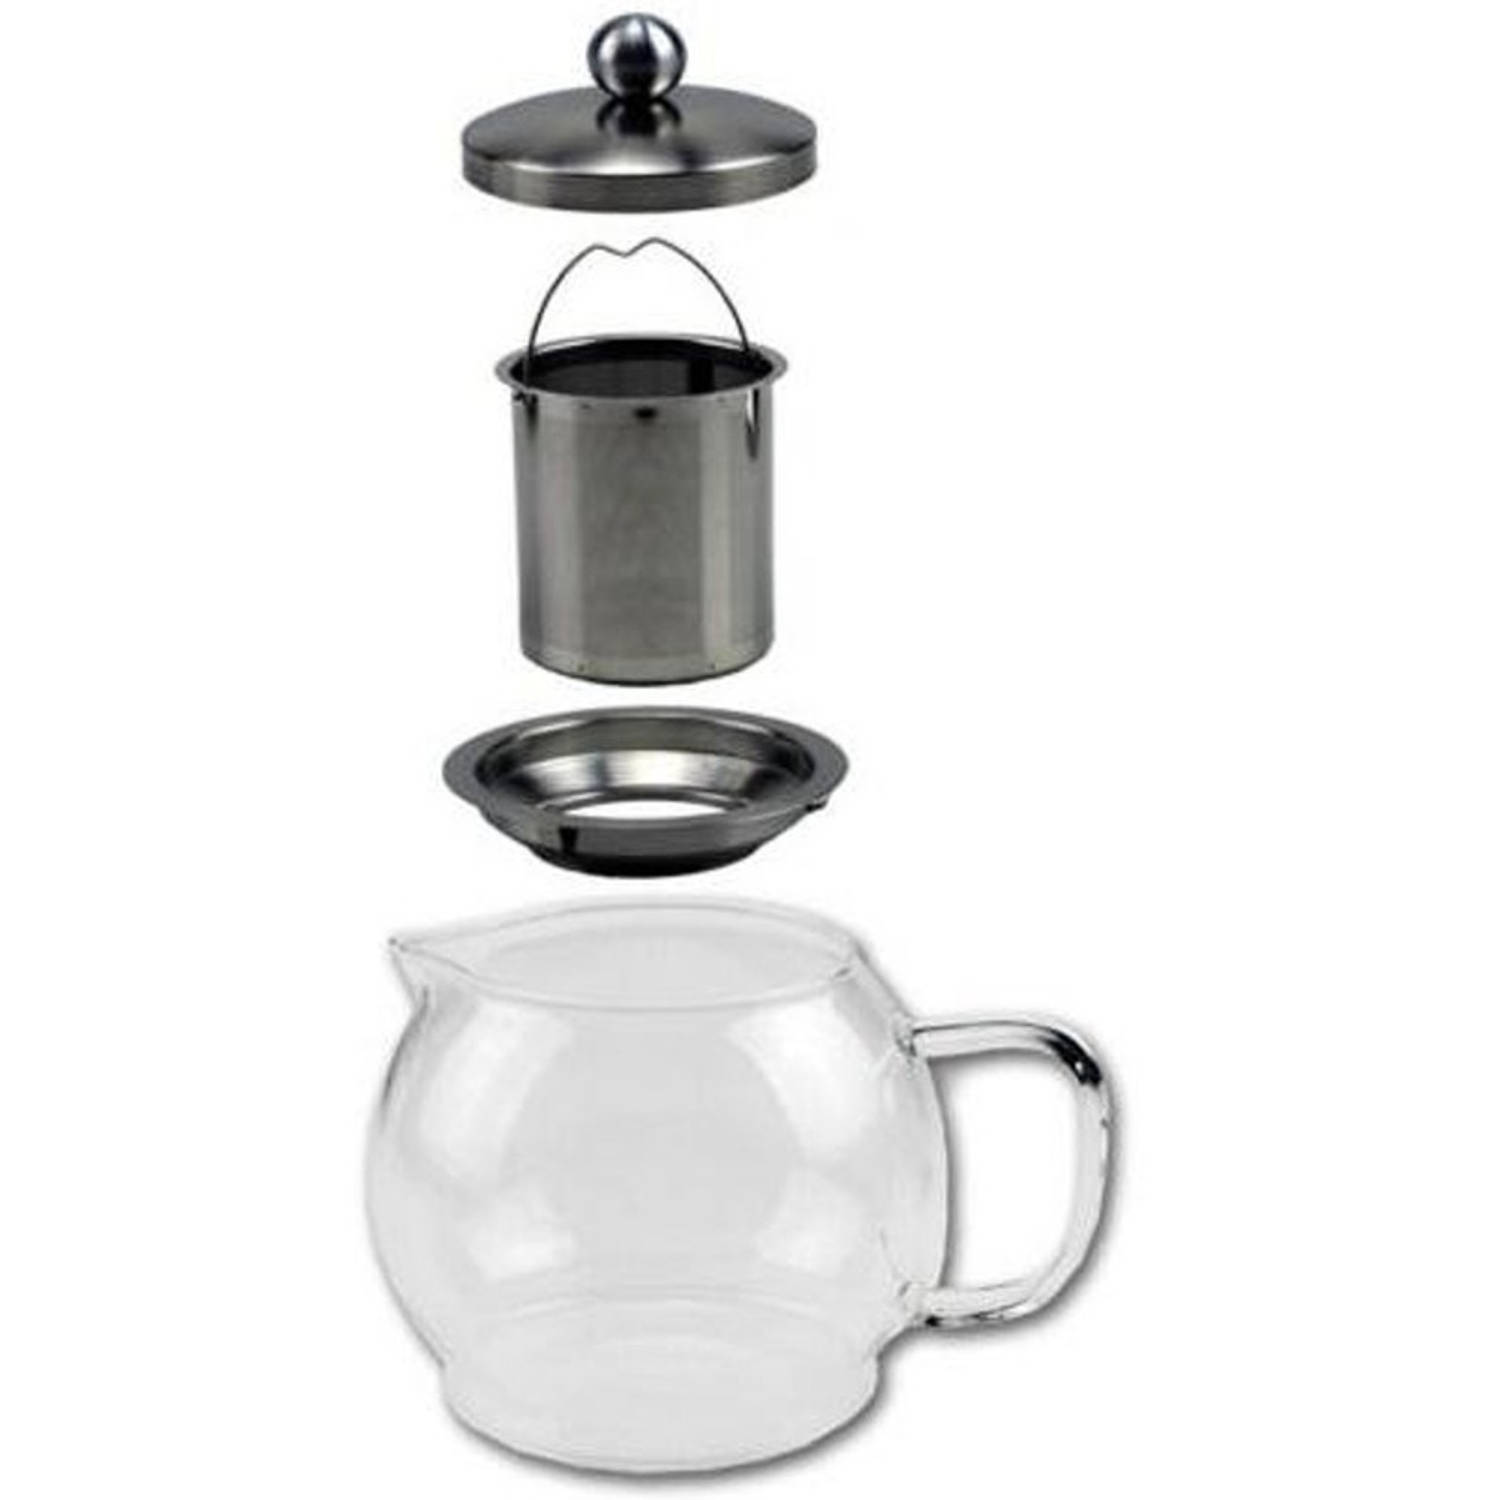 Glazen koffiepot-theekan-theepot met filter 1,2 liter Theekannen en koffiepotten